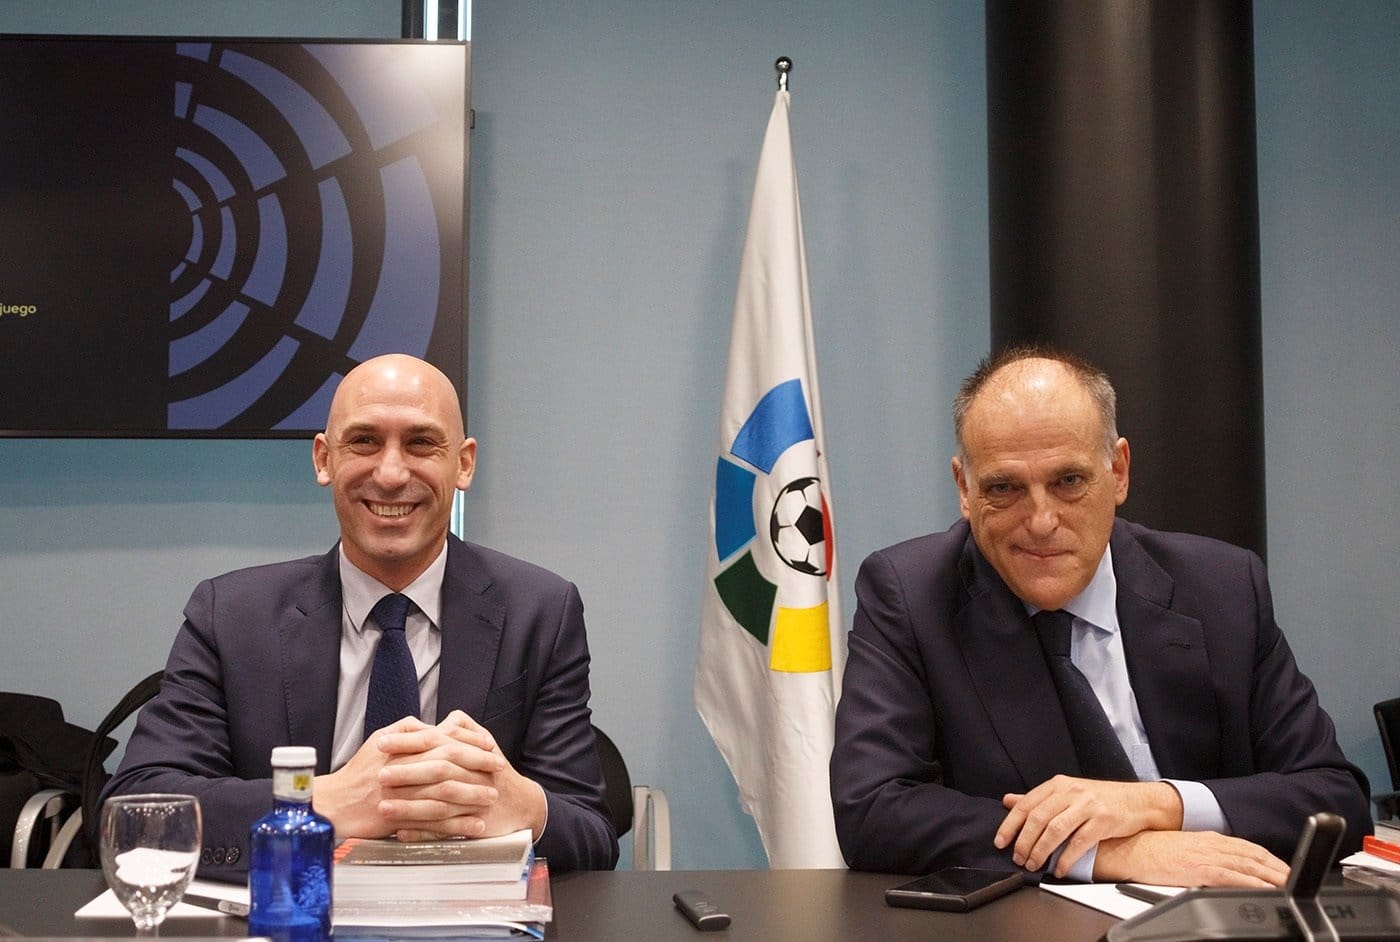 Luis Rubiales, presidente de la RFEFF, y Javier Tebas, que acaba de dimitir para presentarse nuevamente a la presidencia de LaLiga.